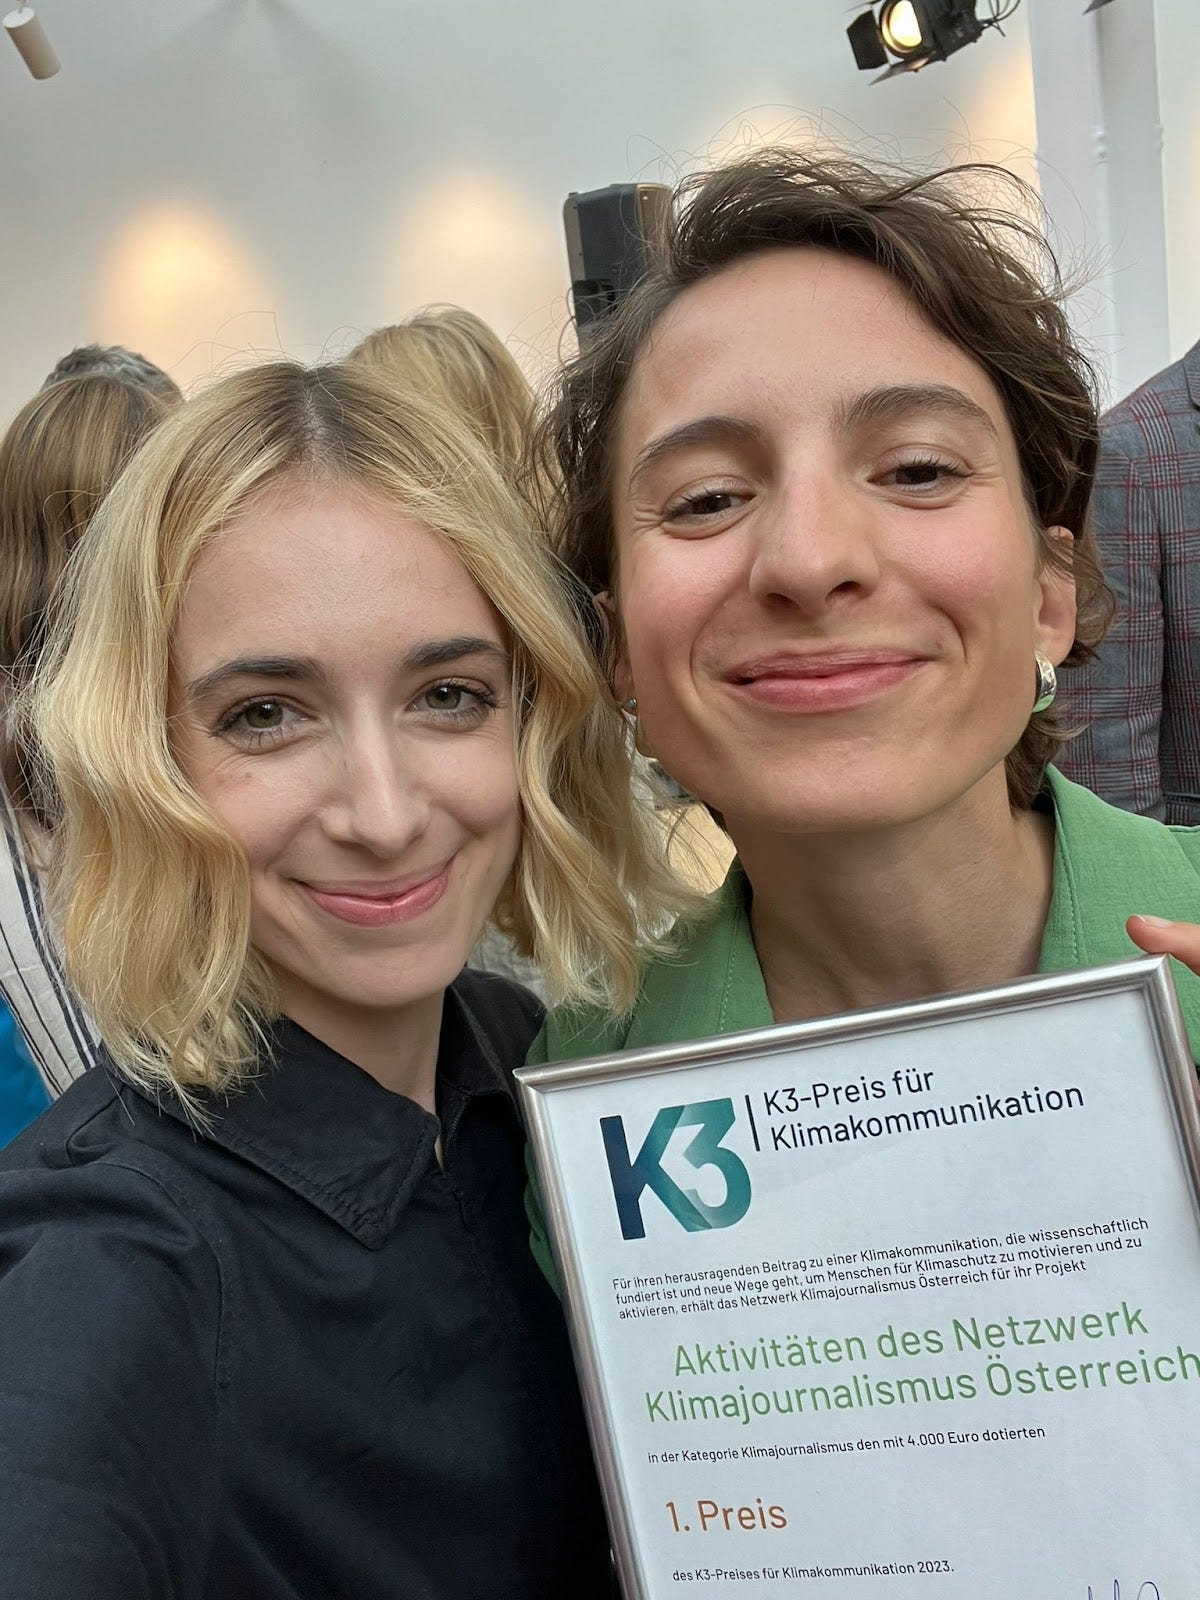 Verena Mischitz und Katharina Kropshofer haben in Frankfurt den K3-Preis für Klimakommunikation entgegen genommen. Im Bild machen sie ein Selfie mit einer Urkunde des Preises.